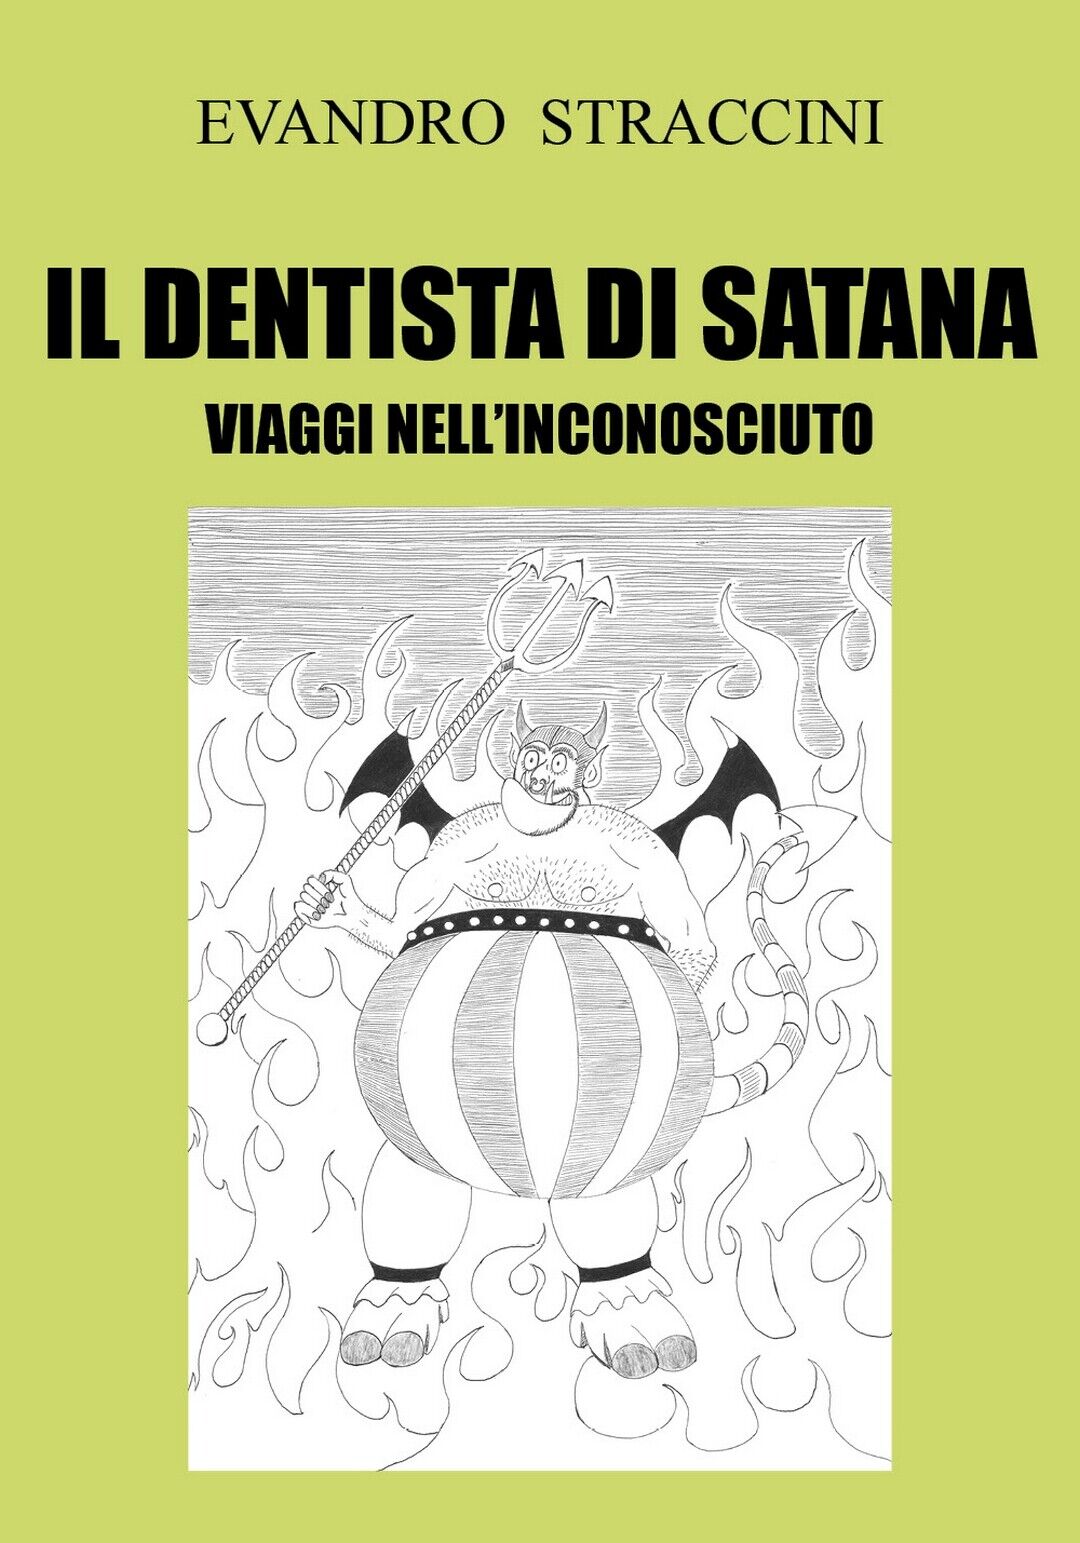 Il Dentista di Satana - Viaggi nelL'Inconosciuto  di Evandro Straccini,  2018